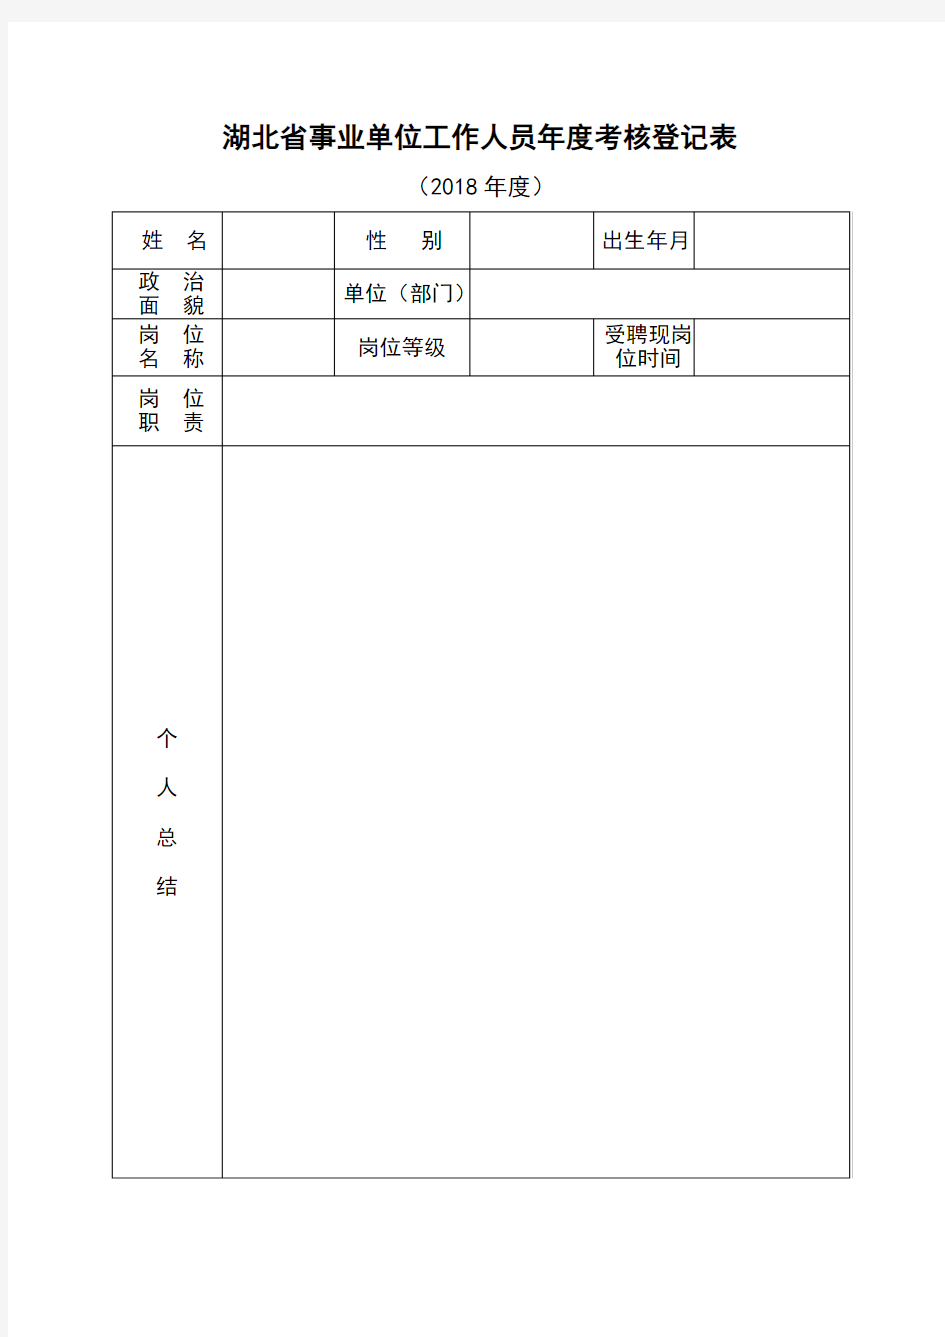 湖北省事业单位工作人员年度考核登记表